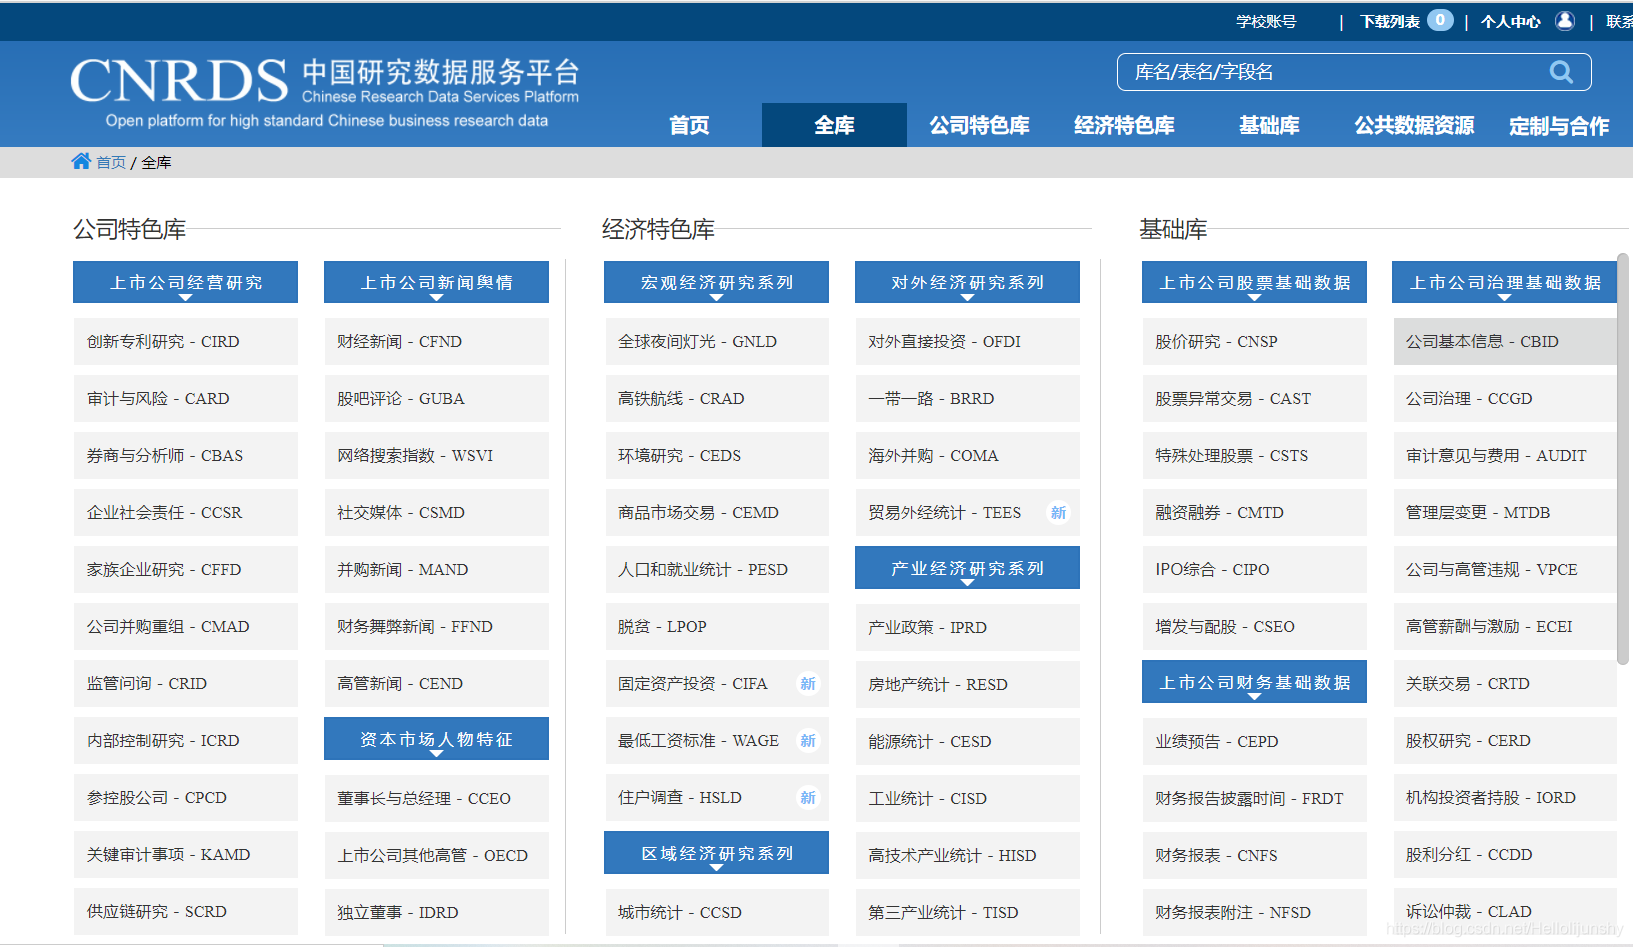  一个有用的数据库：中国研究数据服务平台（CNRDS）